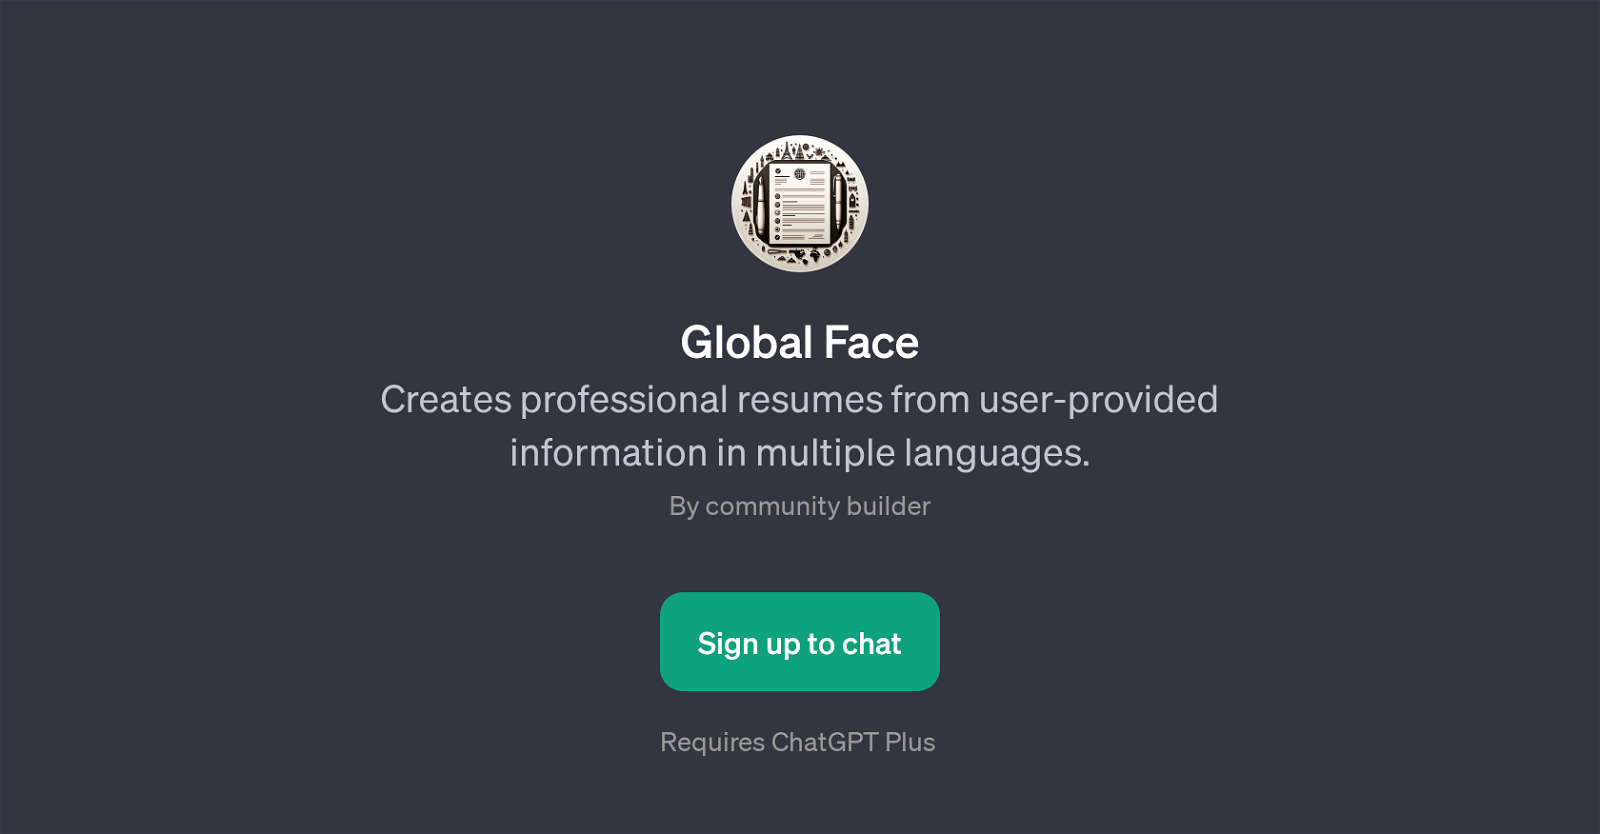 Global Face website